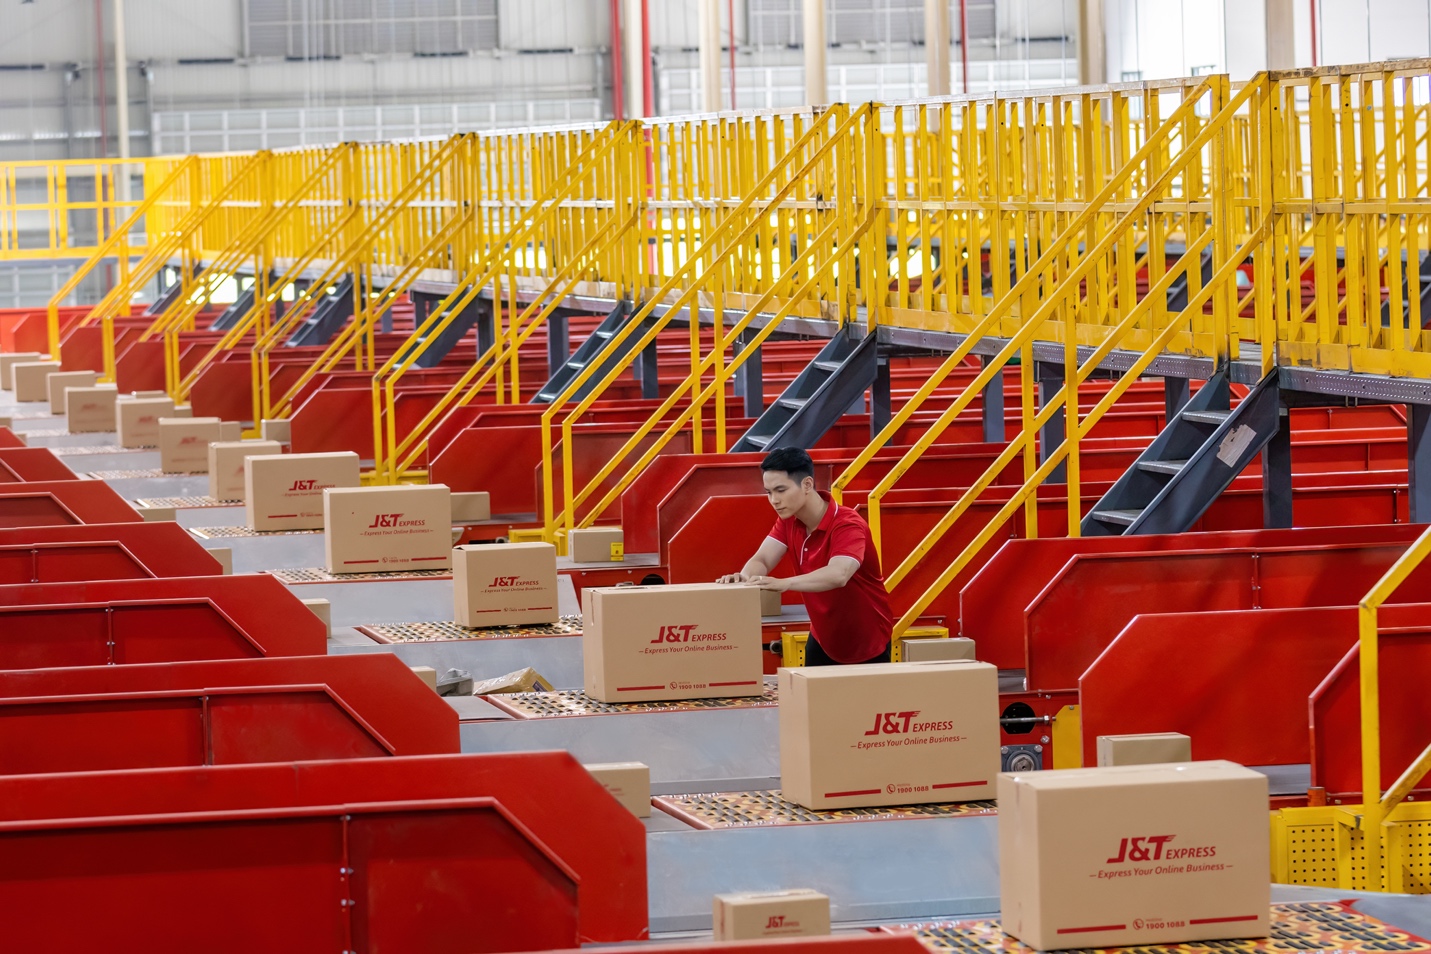 Khánh thành trung tâm trung chuyển Củ Chi mới, J&T Express hướng đến mục tiêu trở thành thương hiệu chuyển phát nhanh hàng đầu Việt Nam - Ảnh 1.